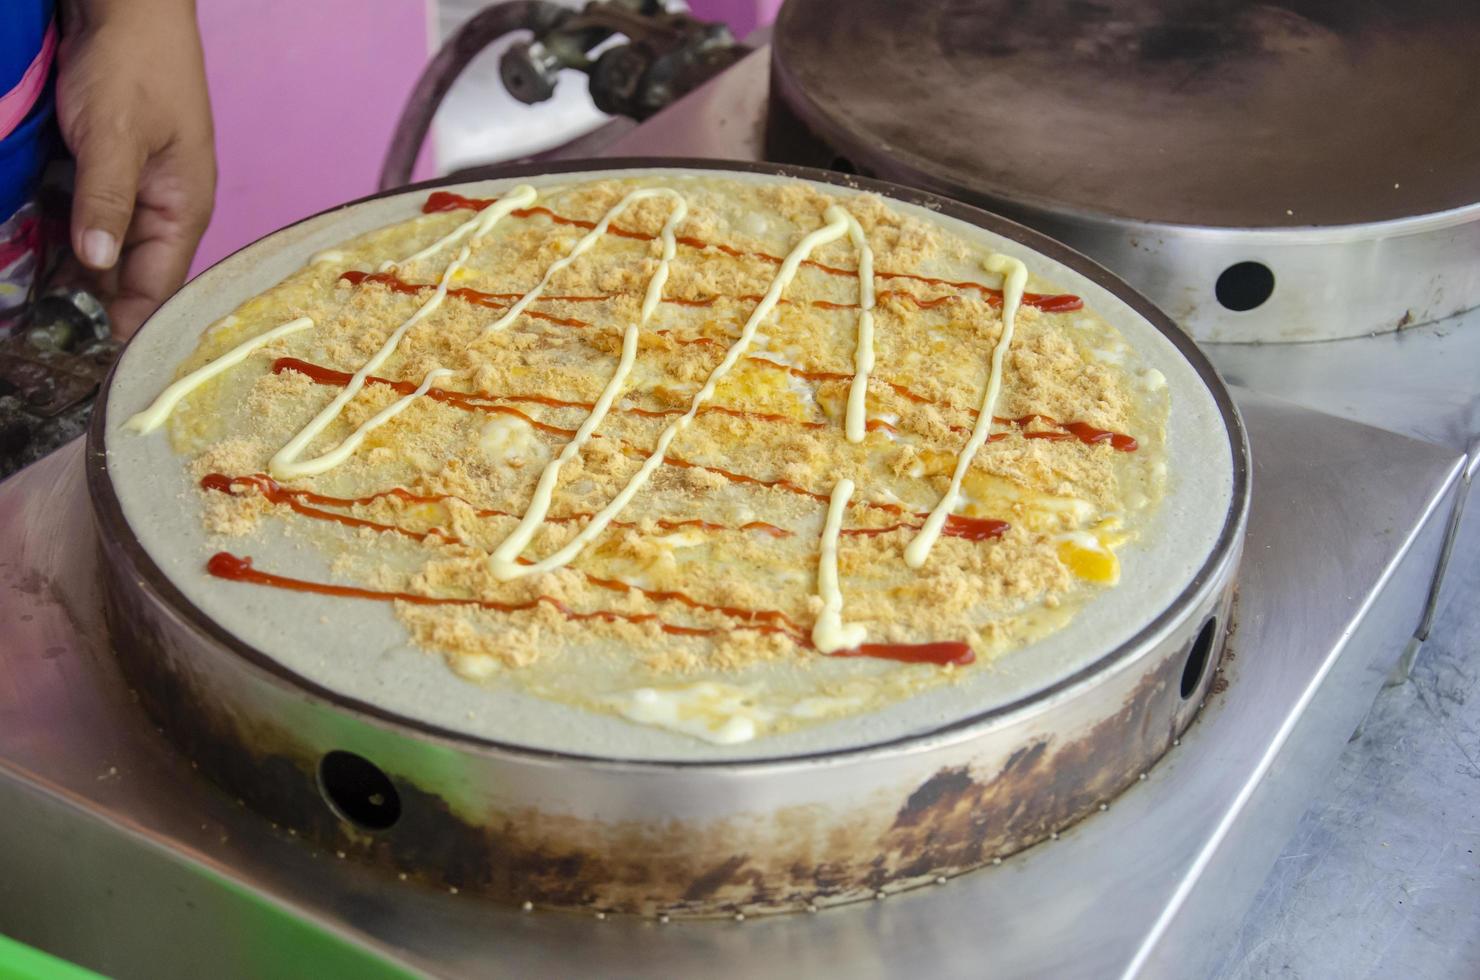 cuisine crêpe dessert avec Garniture, œuf, séché déchiqueté porc, ketchup, Mayonnaise dans rue nourriture marché Thaïlande. photo